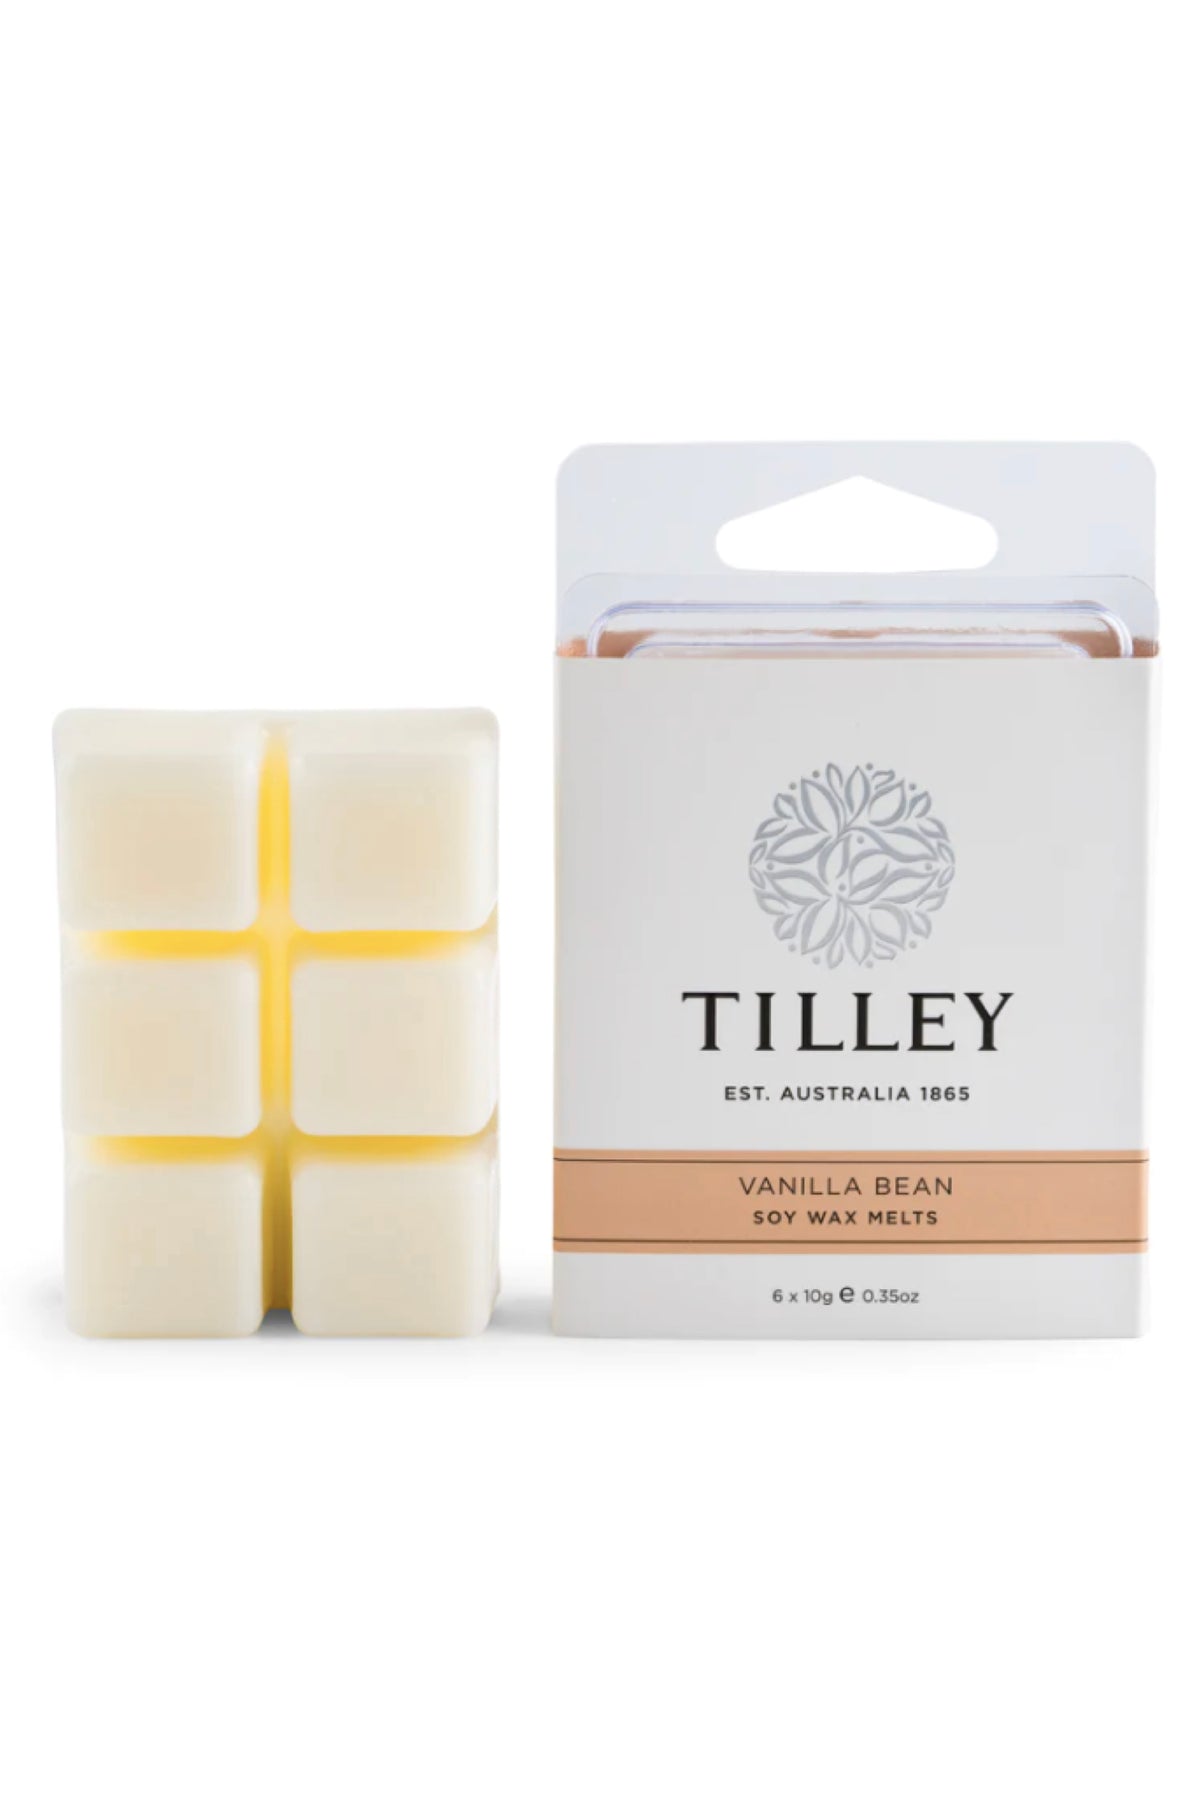 Tilley Soy Wax Melts Vanilla Bean